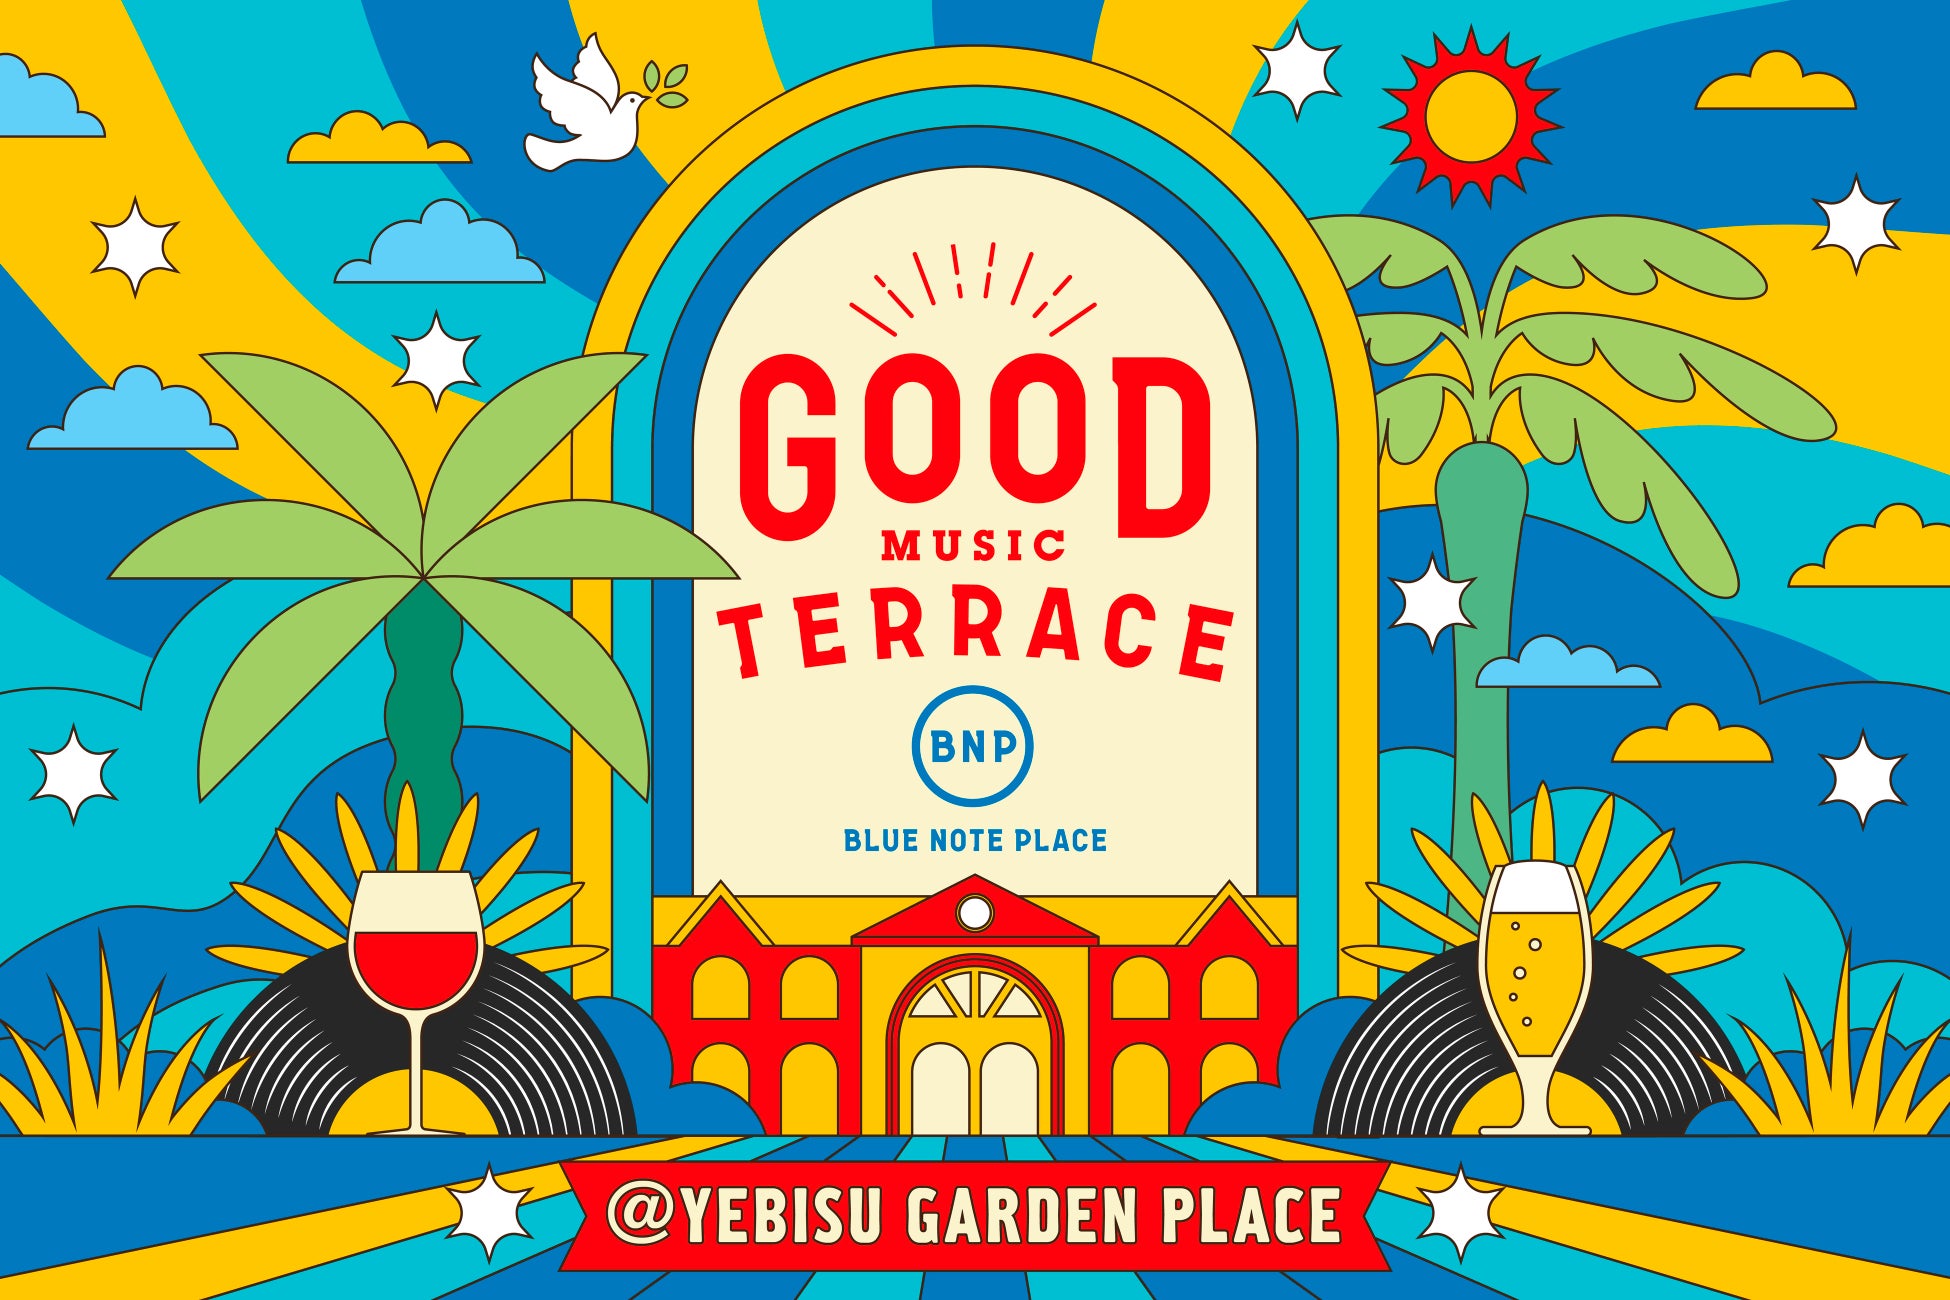 恵比寿ガーデンプレイス時計広場に総勢36名の豪華DJが集結！スペシャルなフード＆ドリンクとグッドミュージックを楽しむ「GOOD MUSIC TERRACE by BLUE NOTE PLACE」開催！